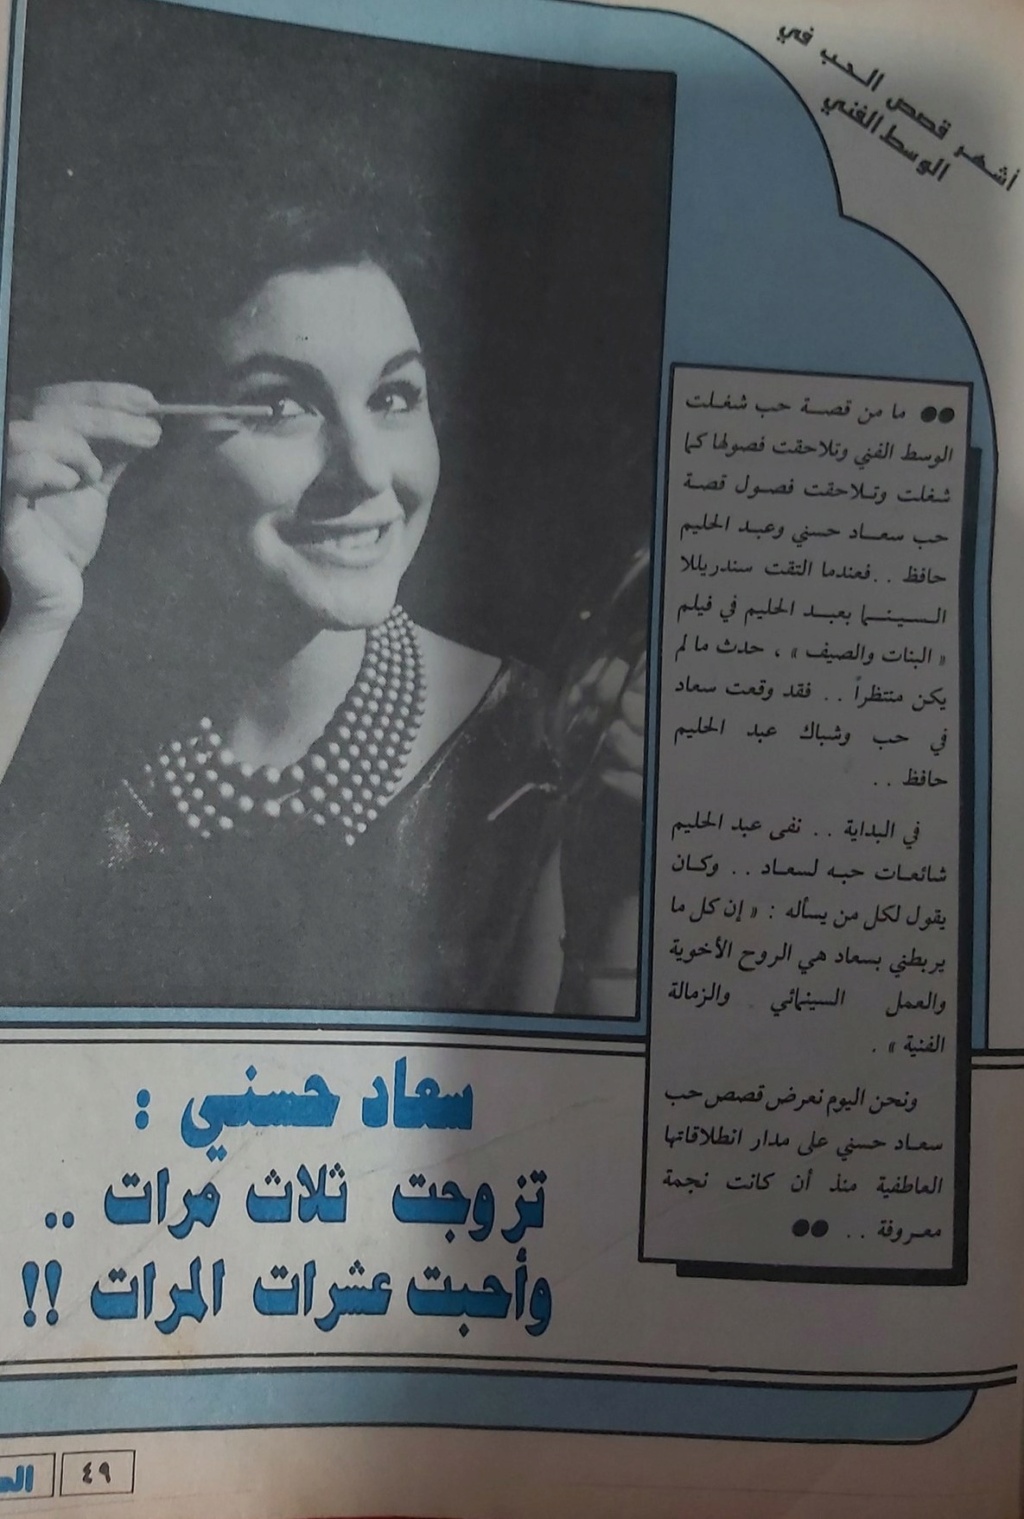 مقال صحفي : سعاد حسني .. تزوجت ثلاث مرات .. وأحبت عشرات المرات !! 1987 م 135